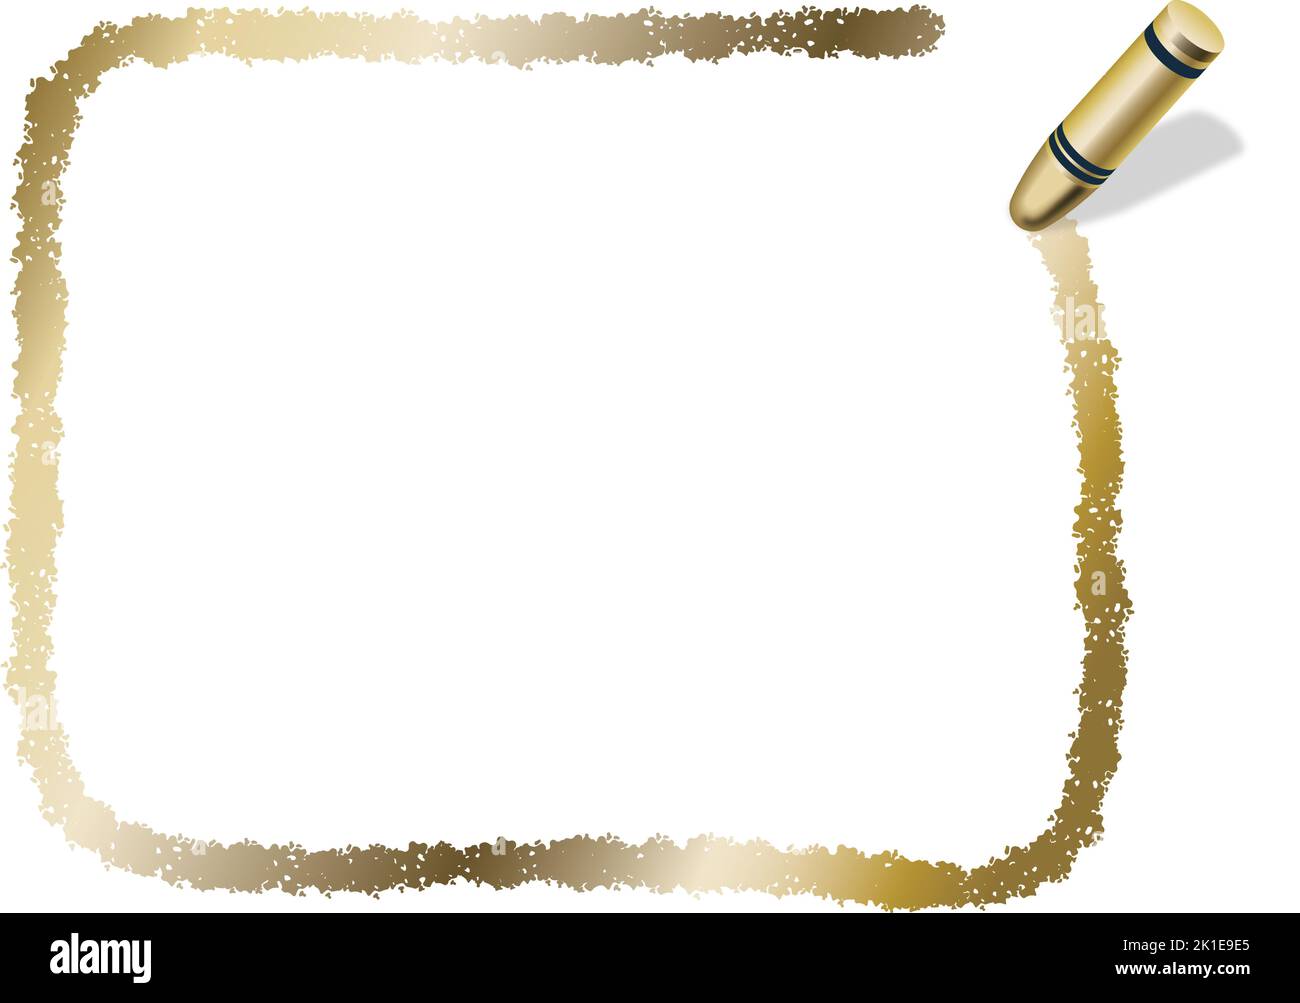 Handgezeichneter Vektor Gold Rechteck Crayon Textur Rahmen isoliert auf Weißem Hintergrund. Stock Vektor